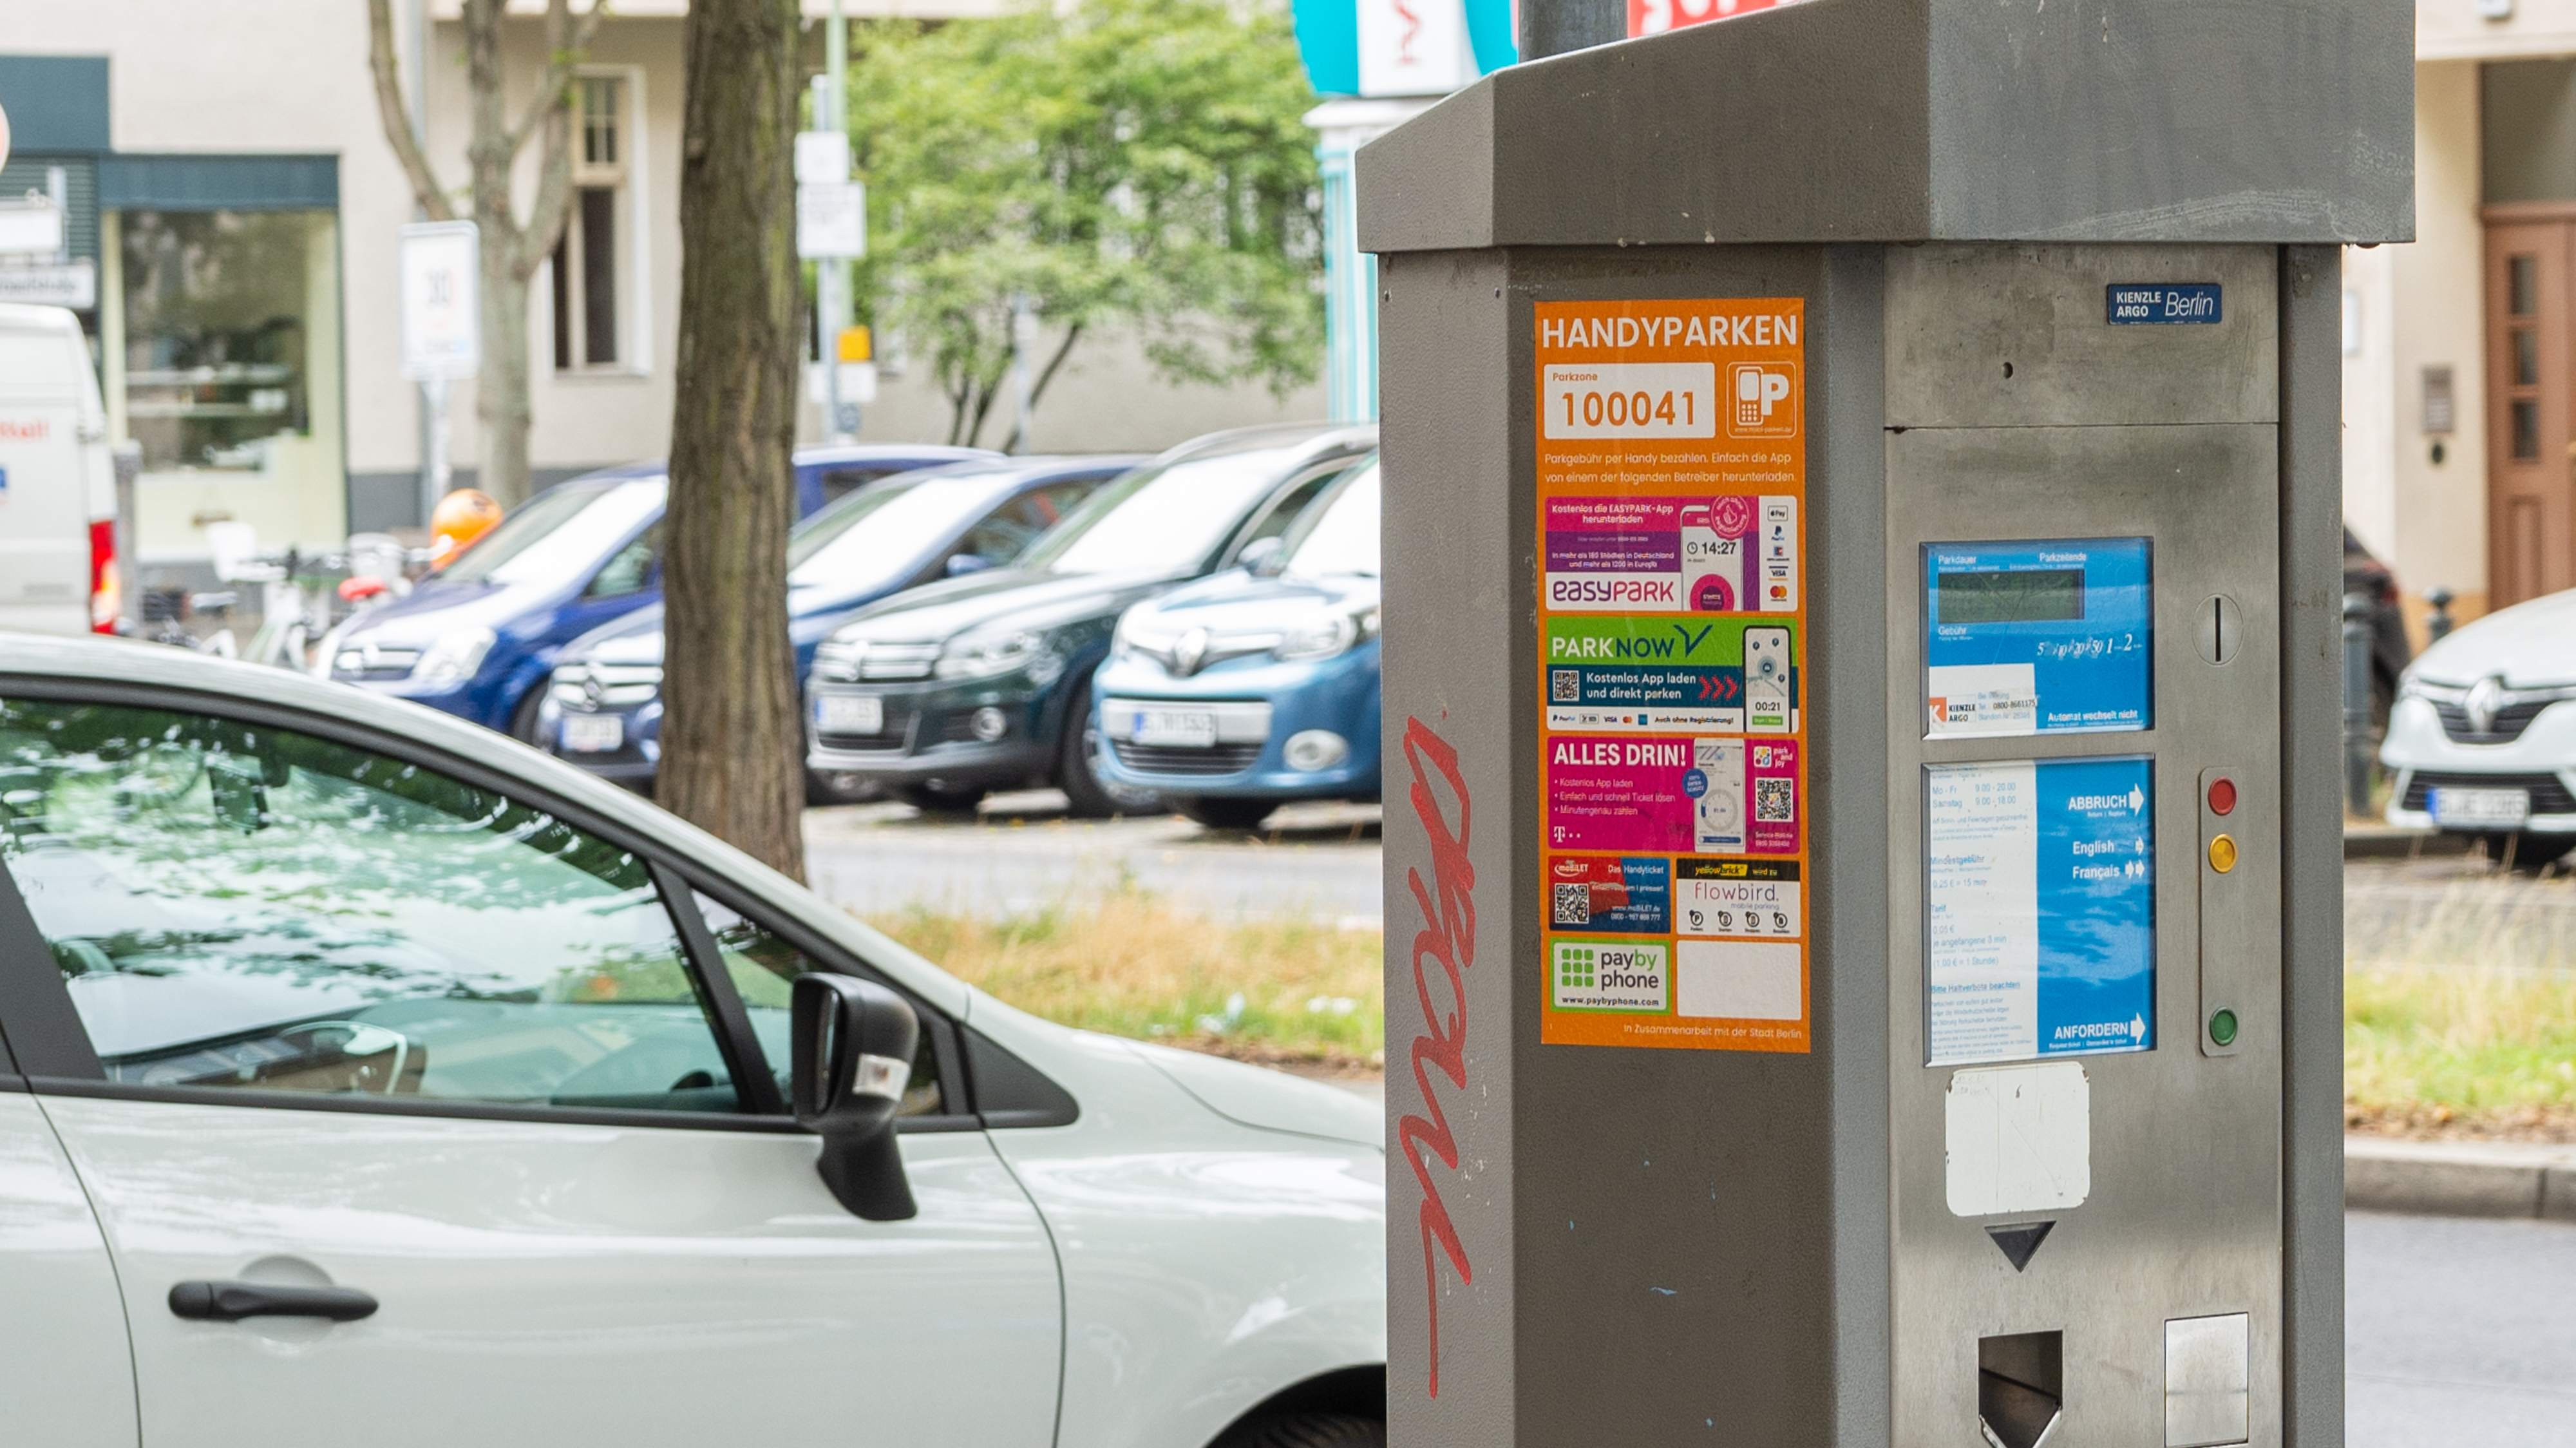 Handyparken in Berlin jetzt ohne Vignette​ | heise online